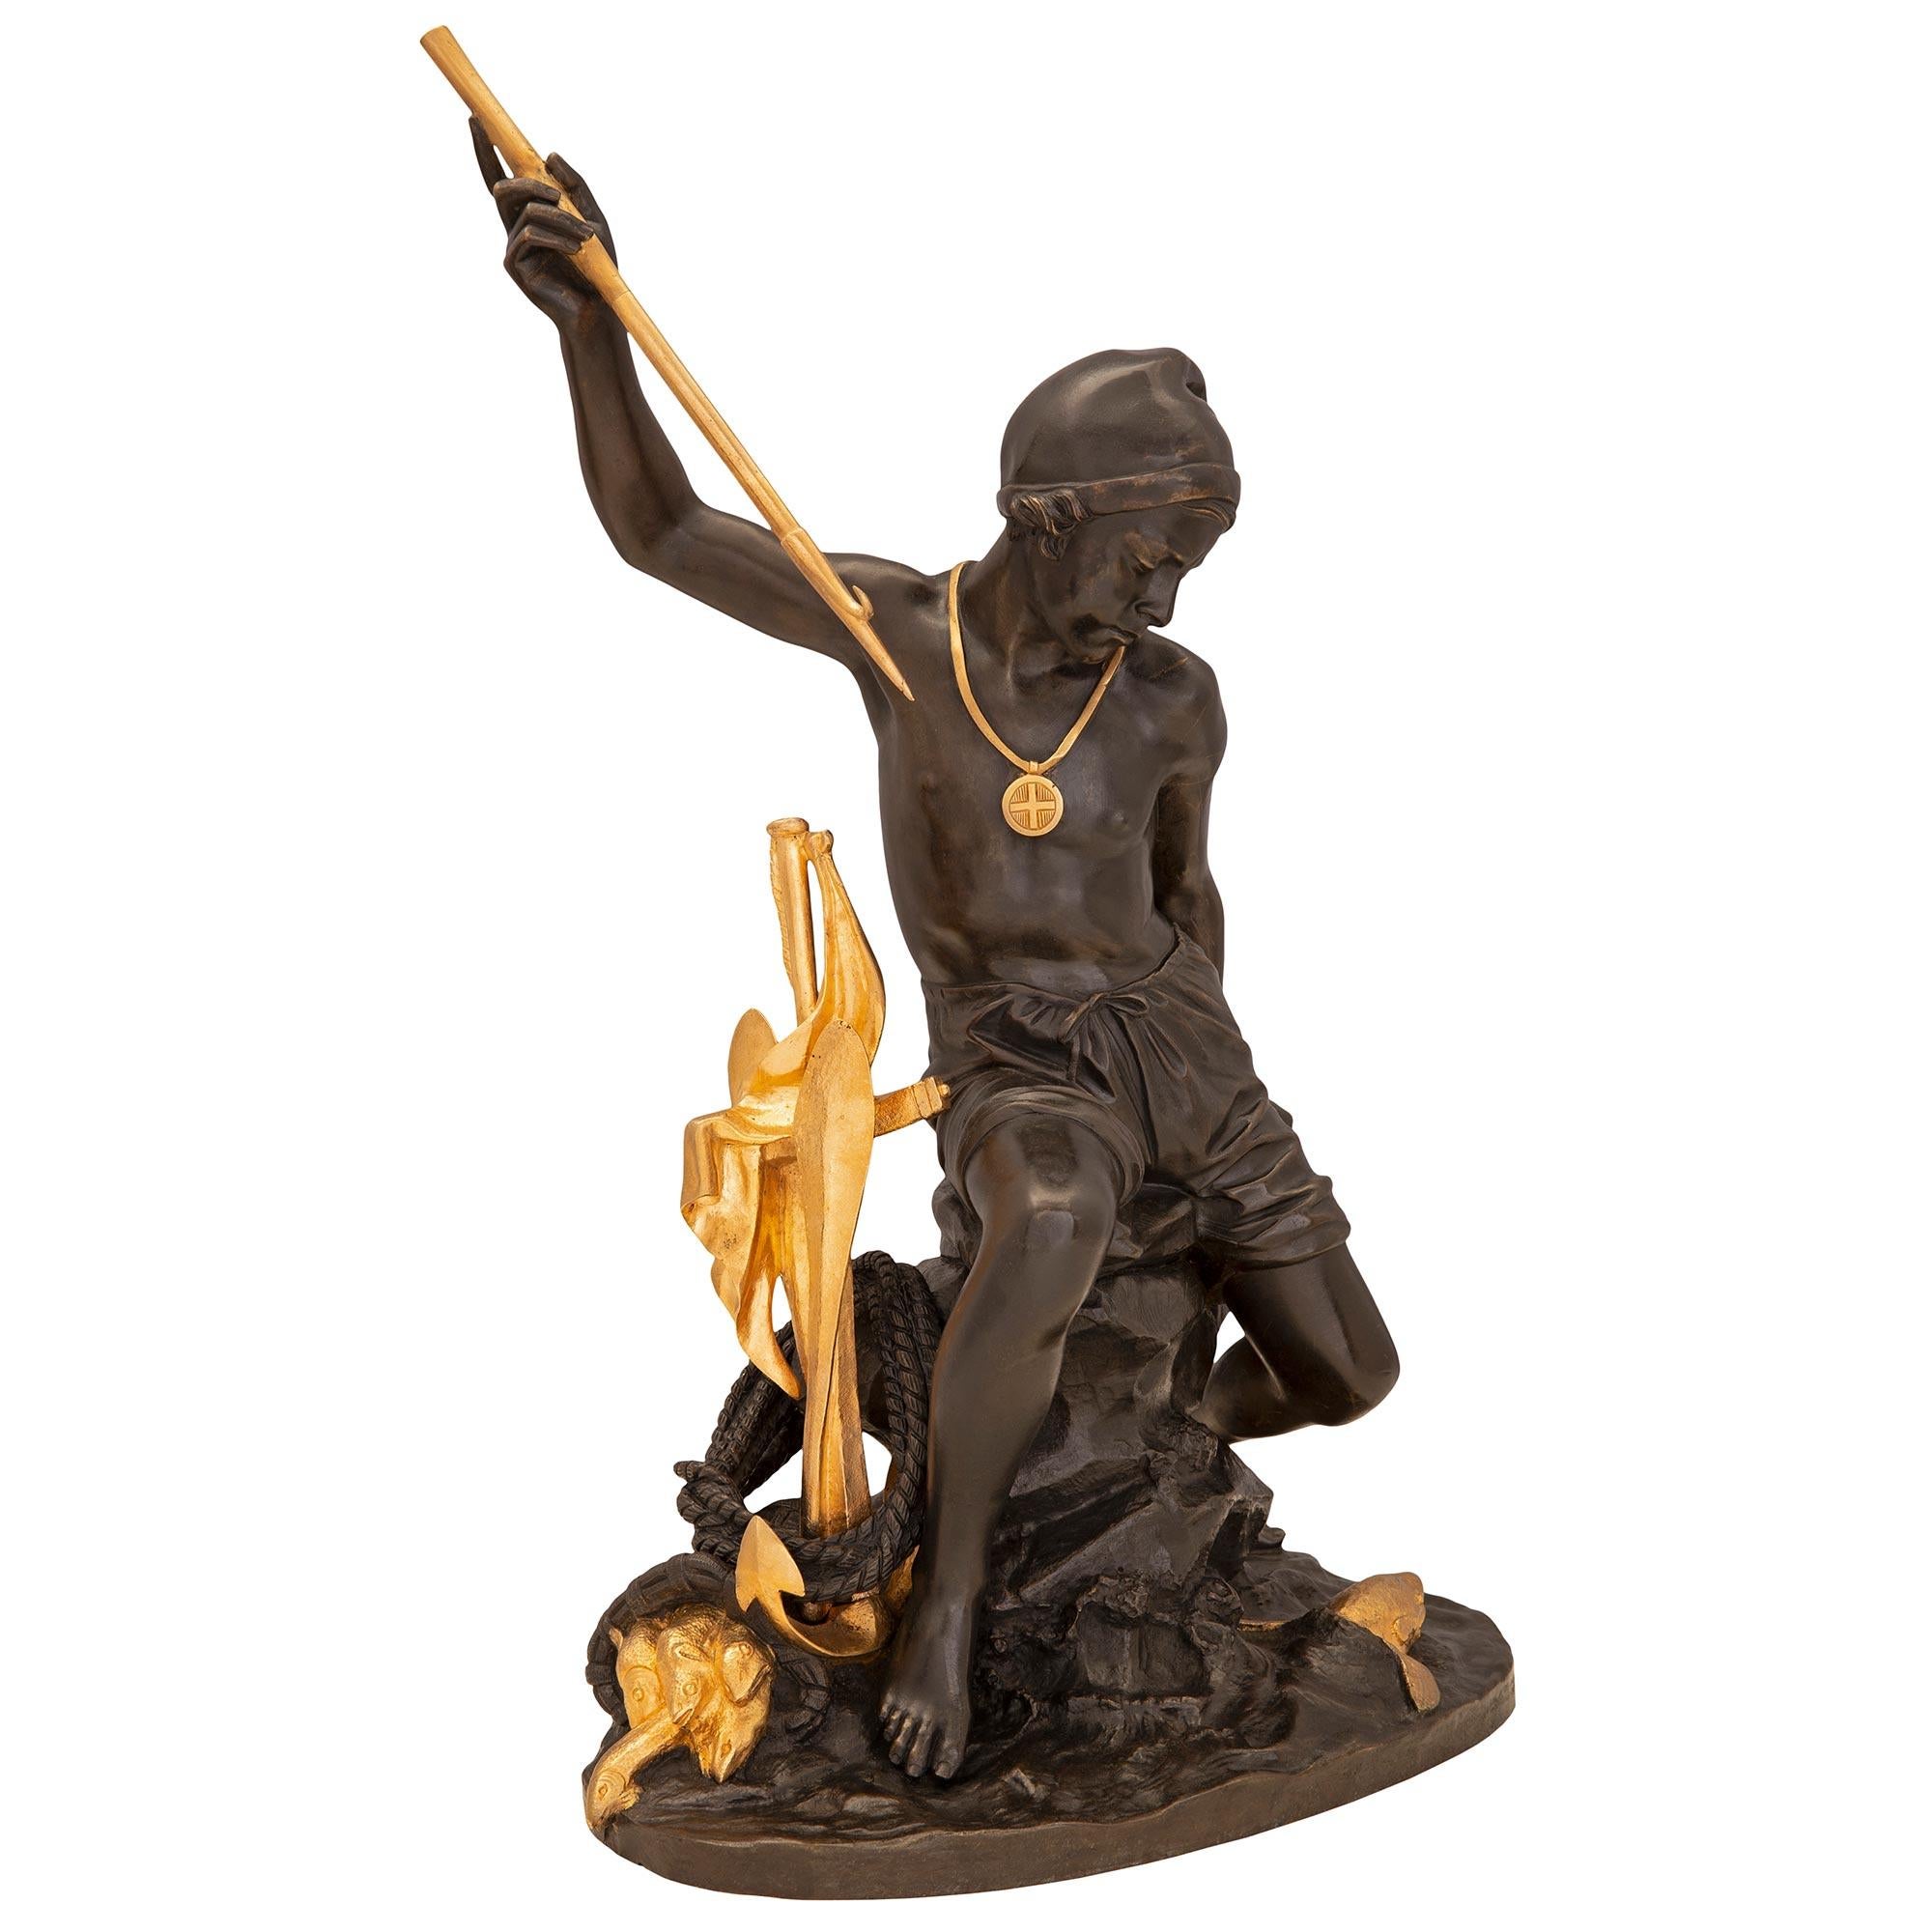 Exceptionnelle et extrêmement décorative statue française du 19ème siècle en bronze patiné et ormolu, estampillée Tiffany. La statue est surélevée par une base oblongue avec un dessin de vague merveilleusement exécuté, des poissons uniques nageant,